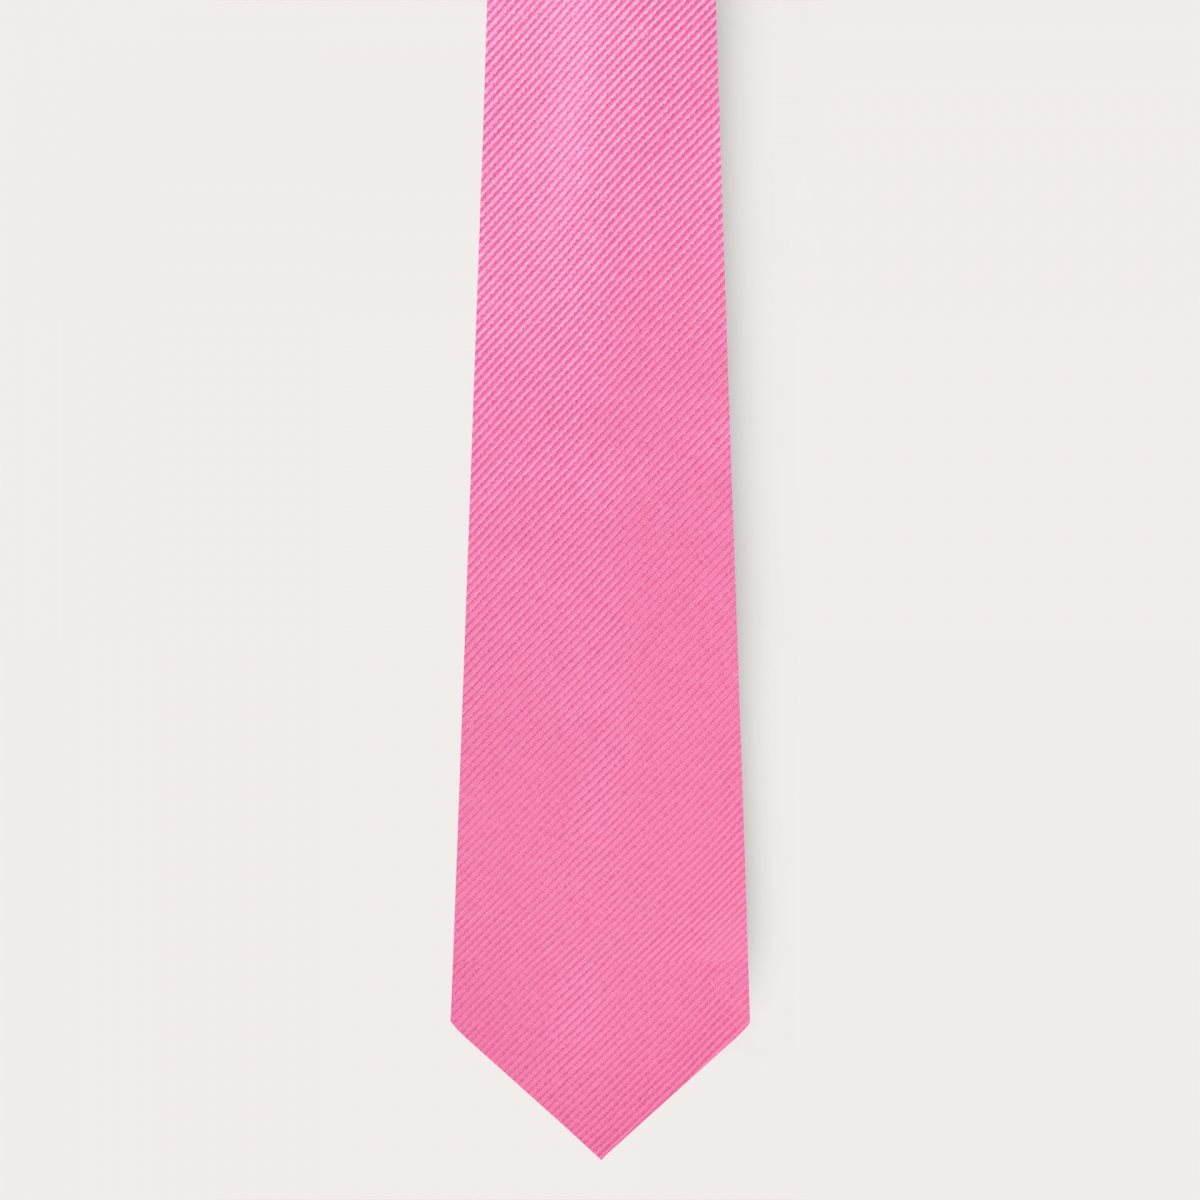 Conjunto coordinado de corbata y tirantes en seda rosa